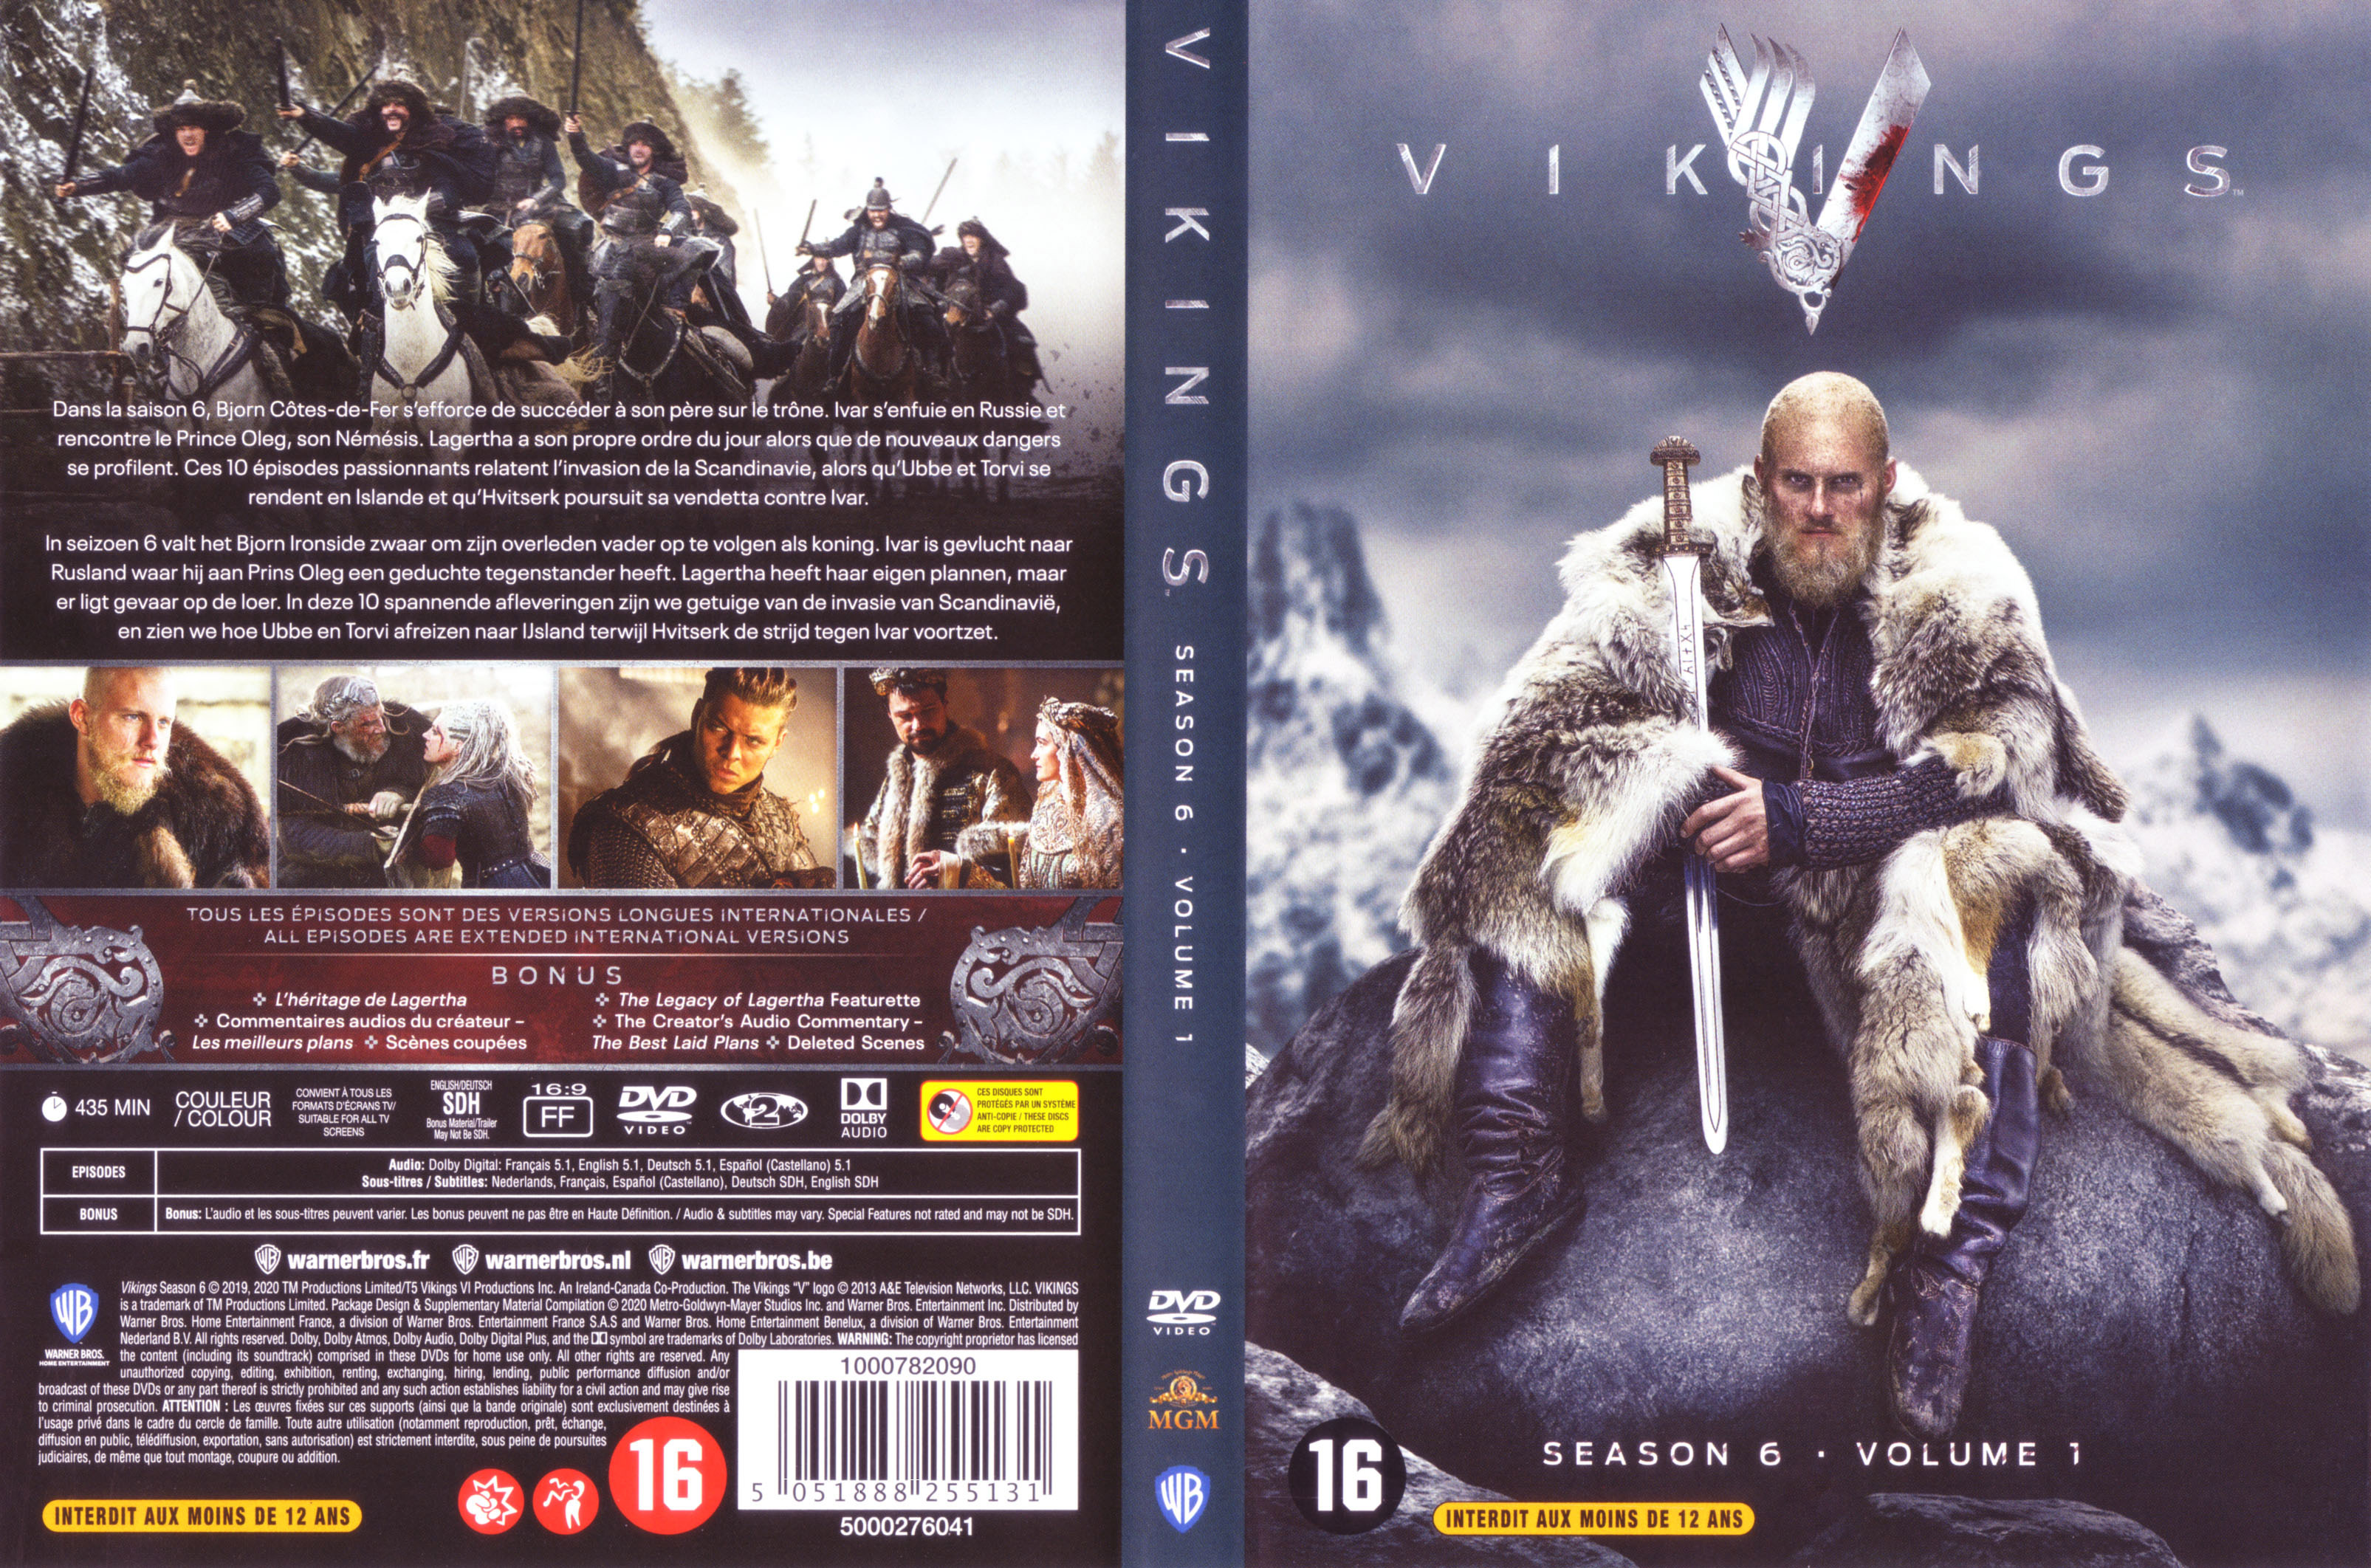 Jaquette DVD Vikings Saison 6 Vol 1